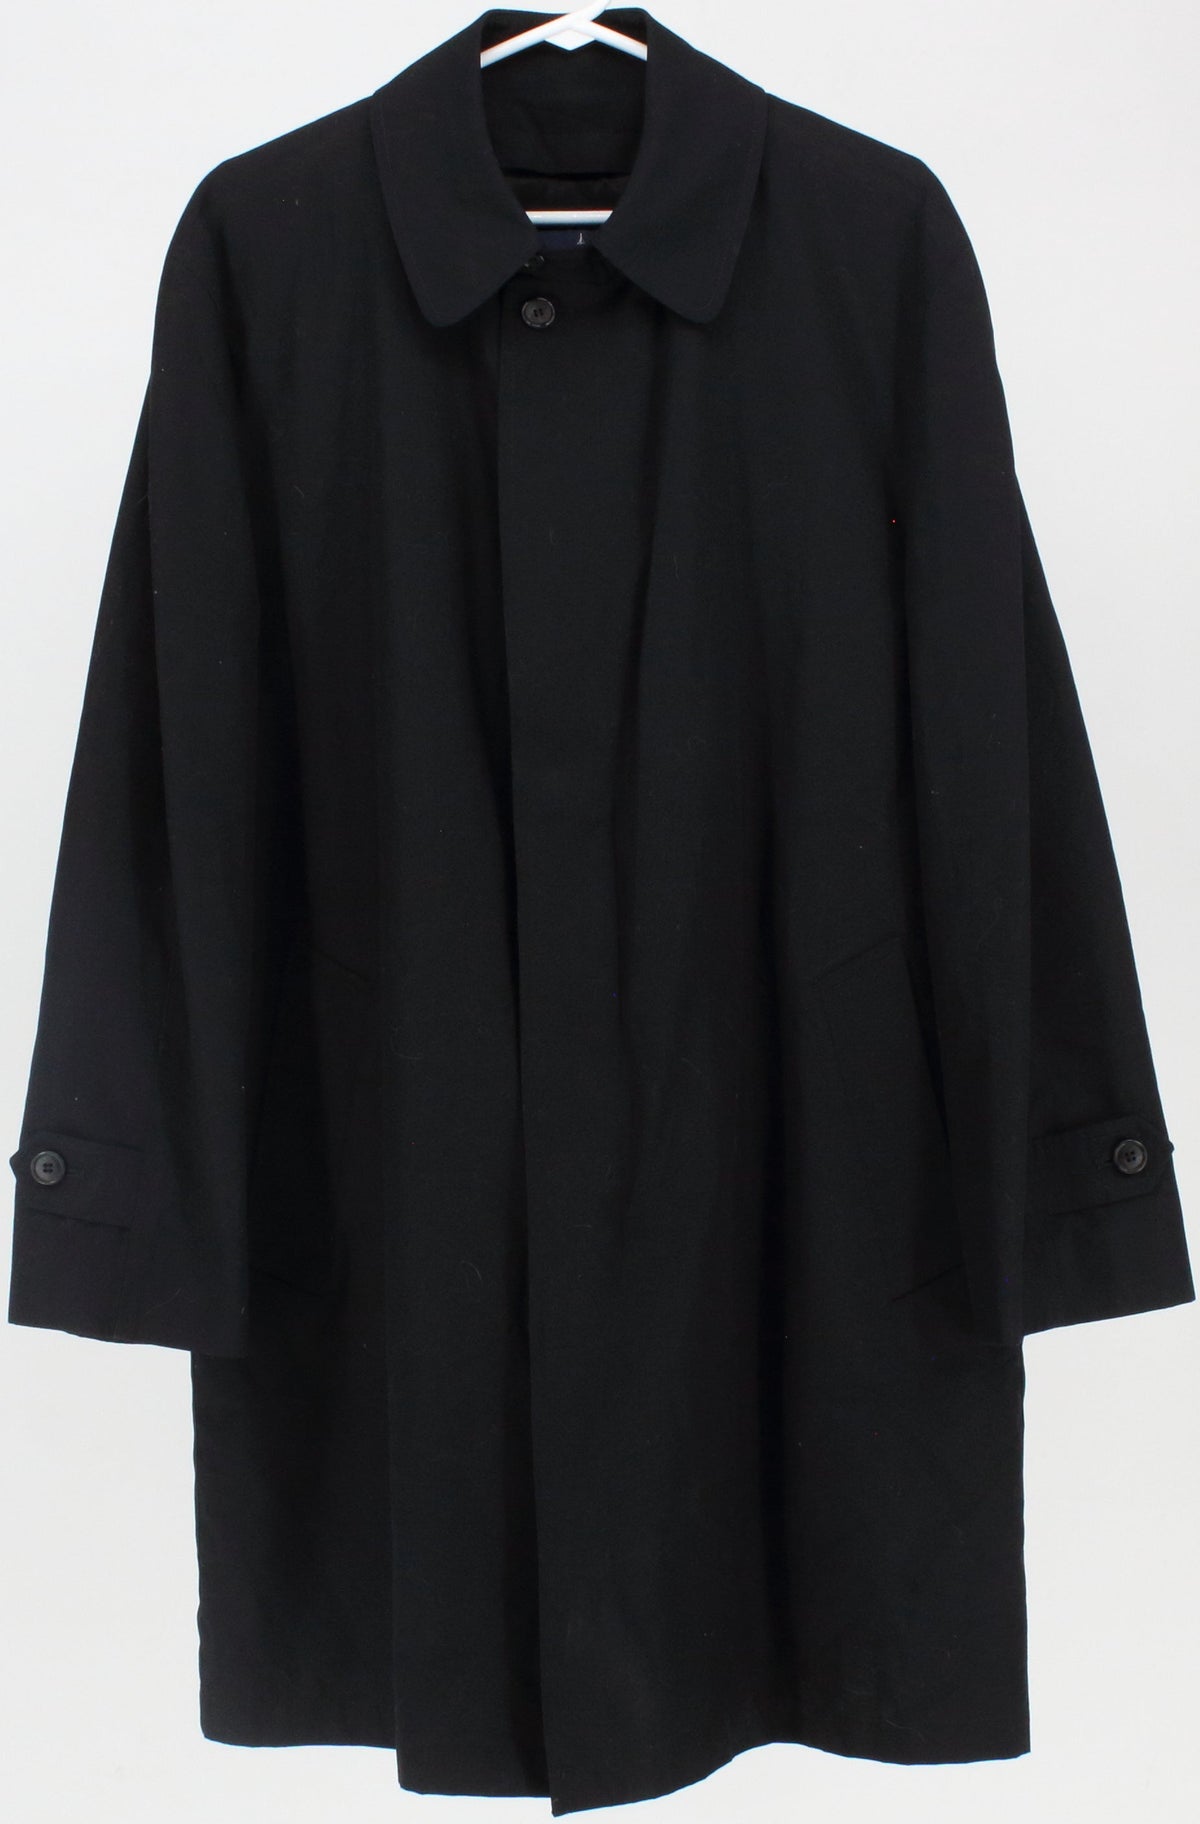 London Fog Black Insulated Men's Coat